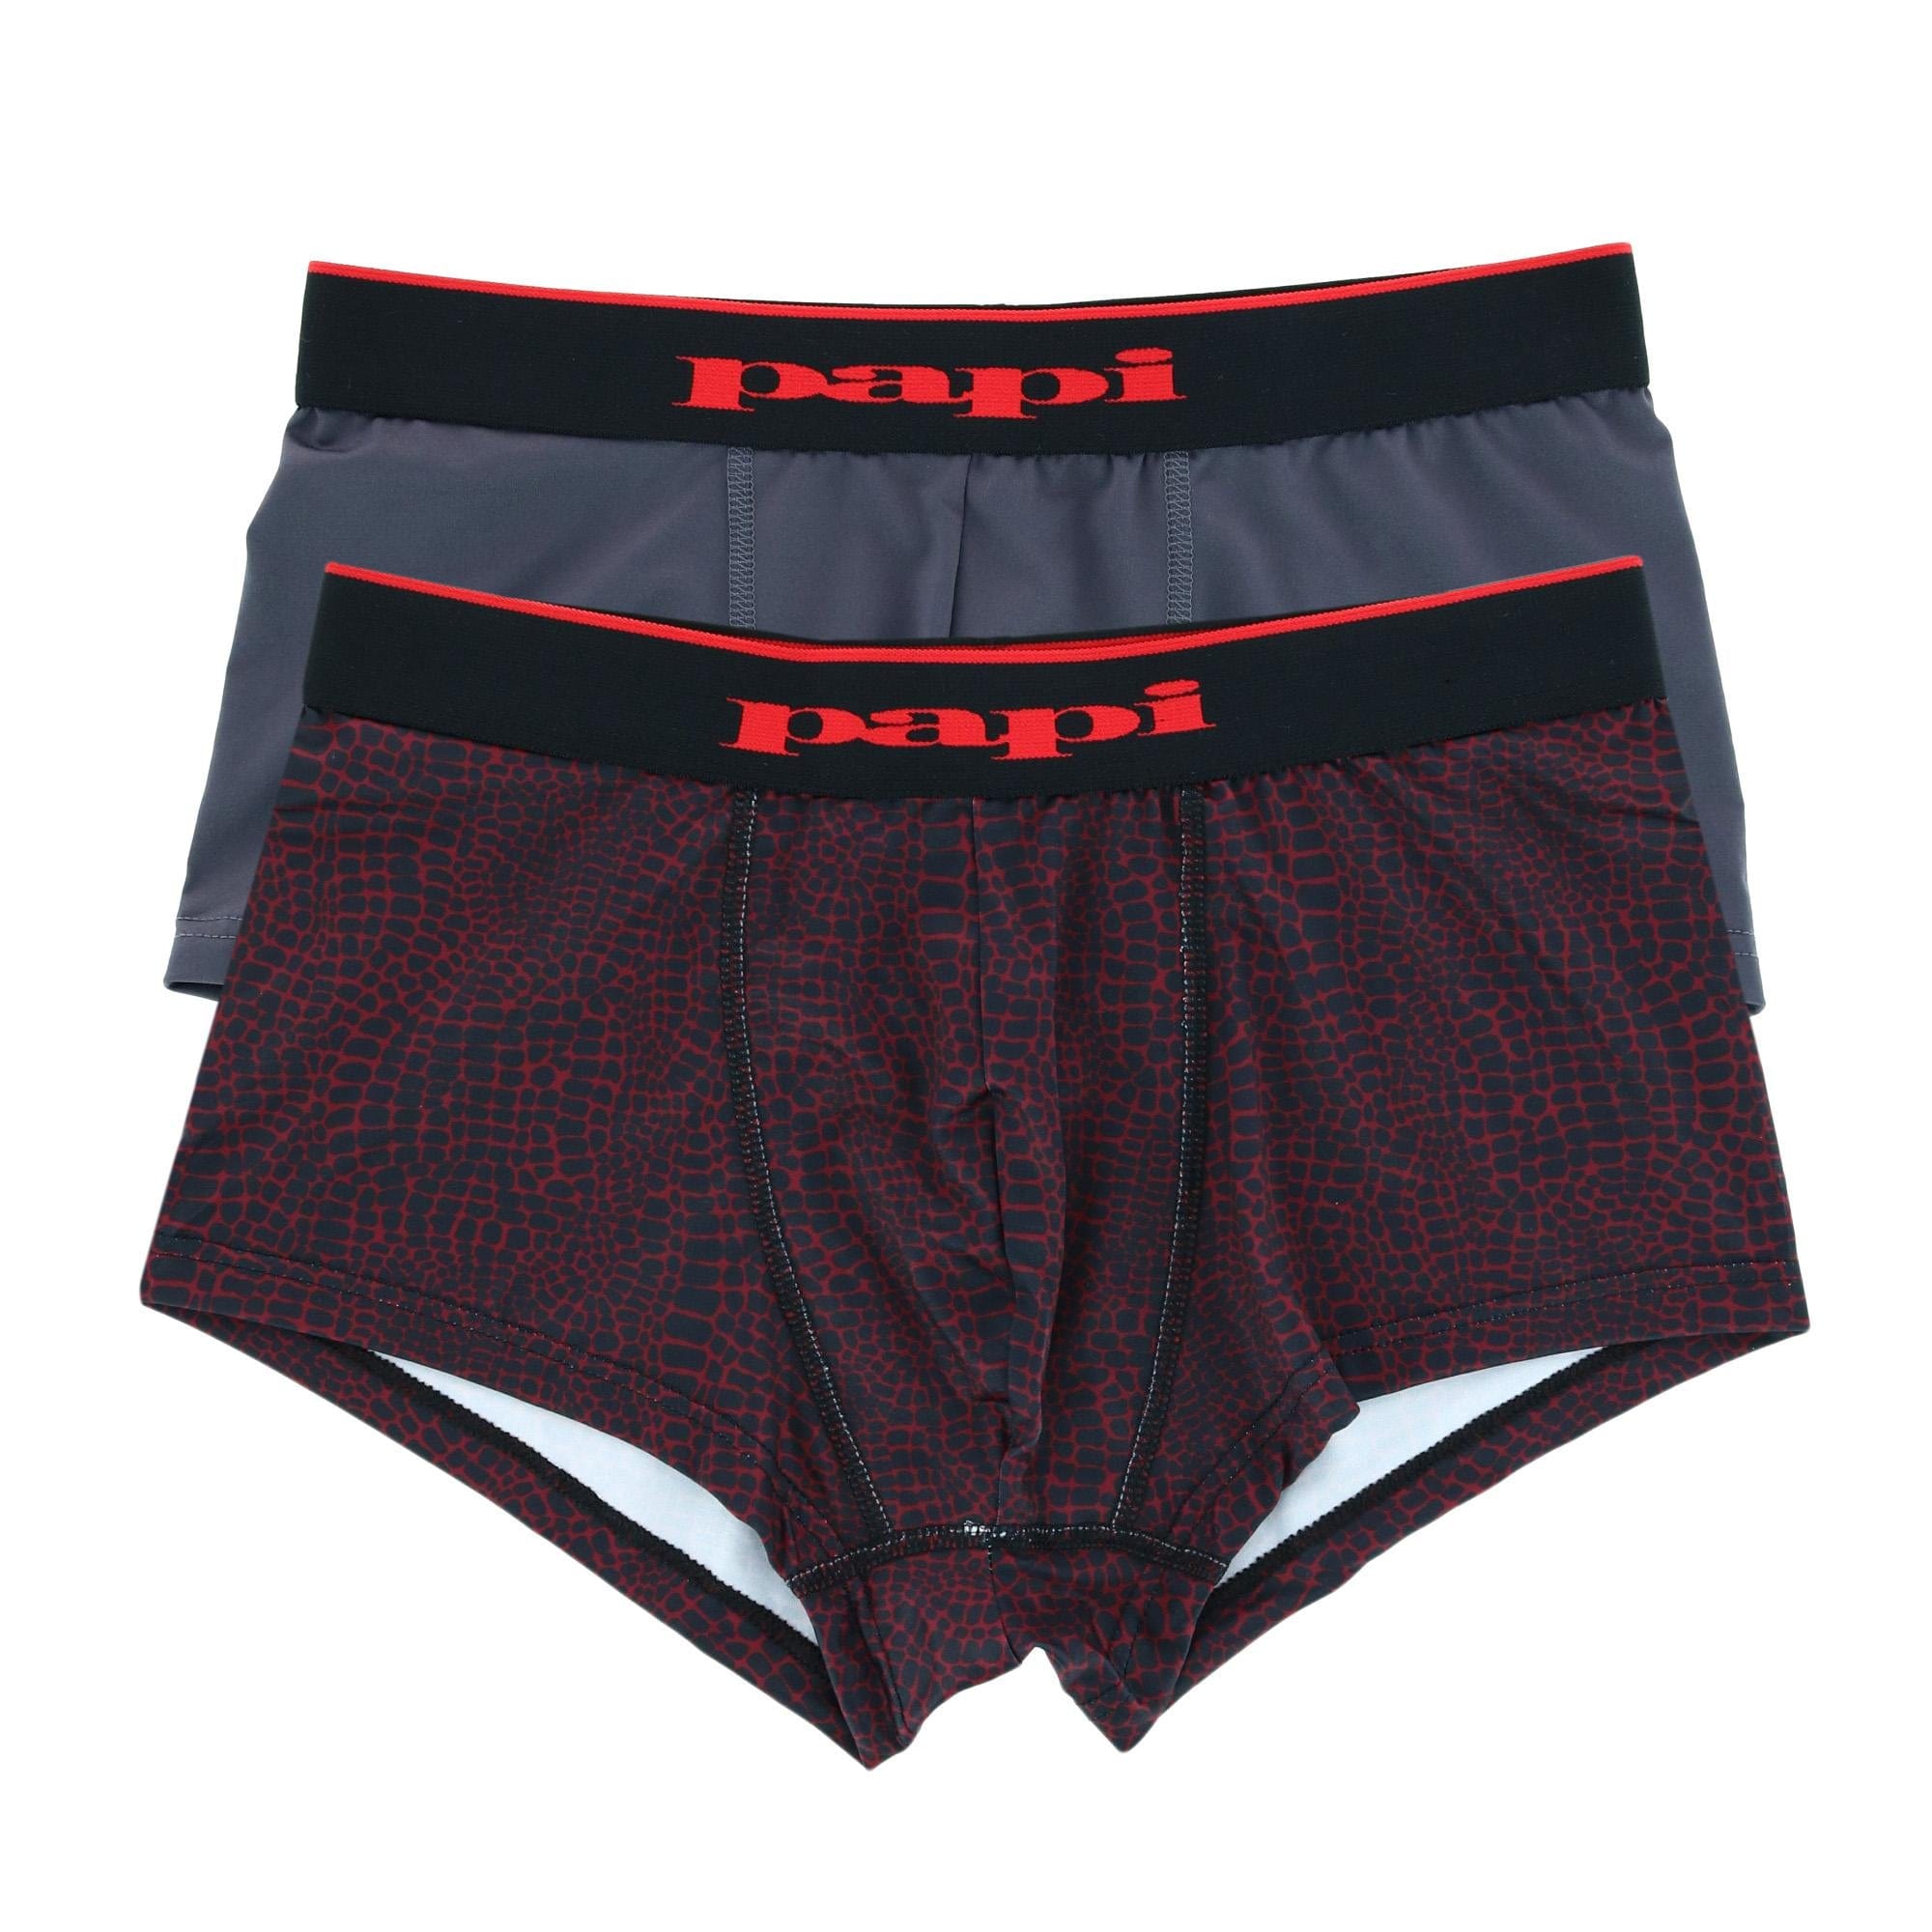 Papi Underwear, Papi Briefs & Boxers